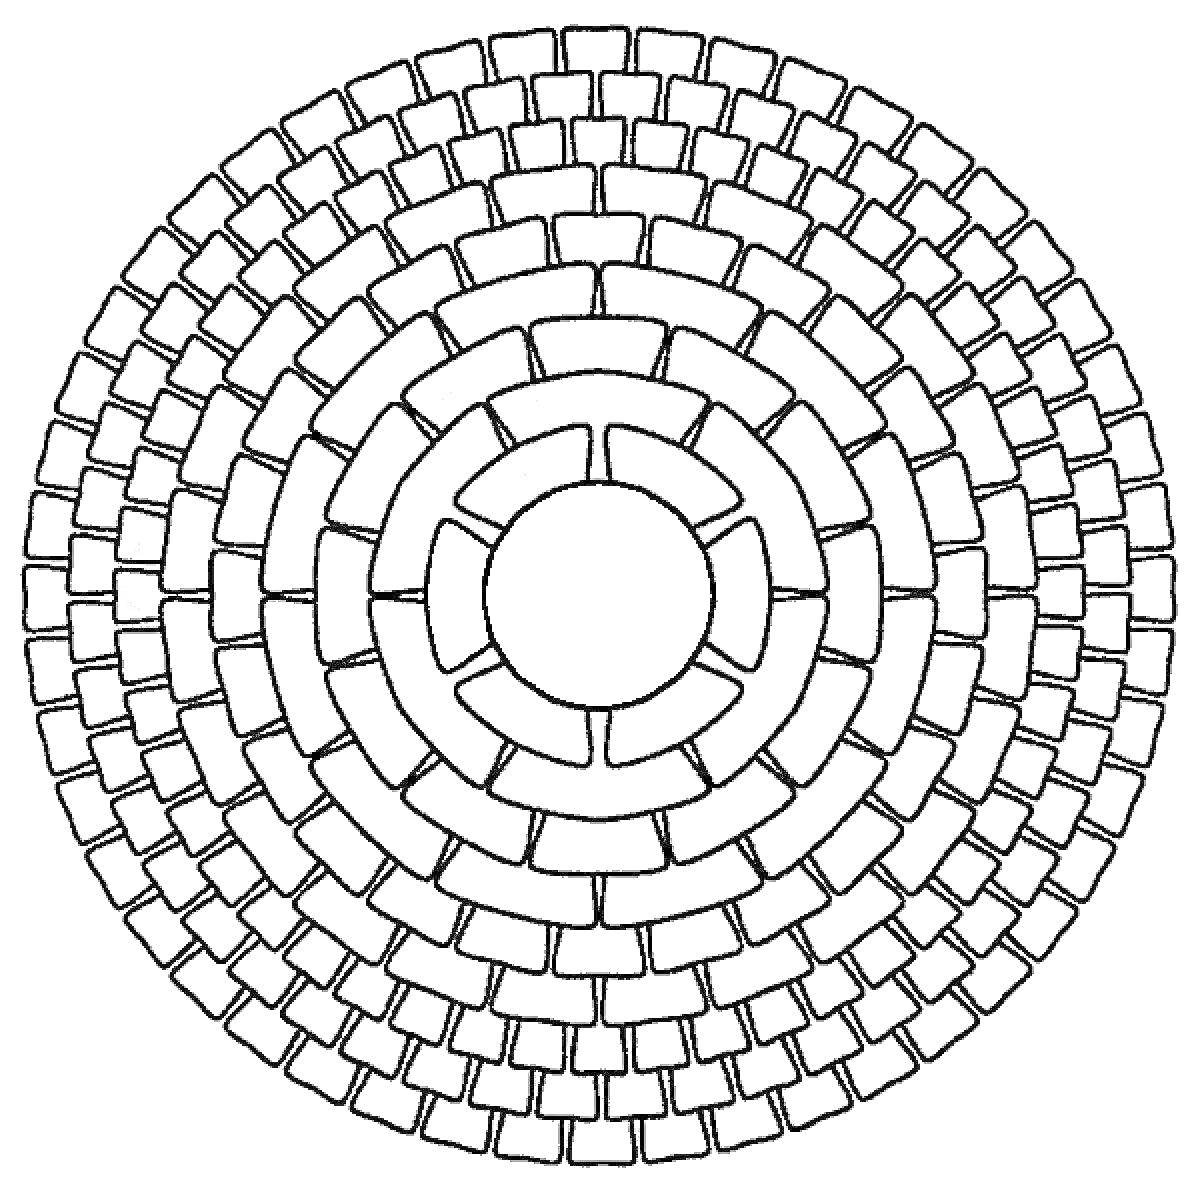 Раскраска круговая спираль с элементами прямоугольных блоков